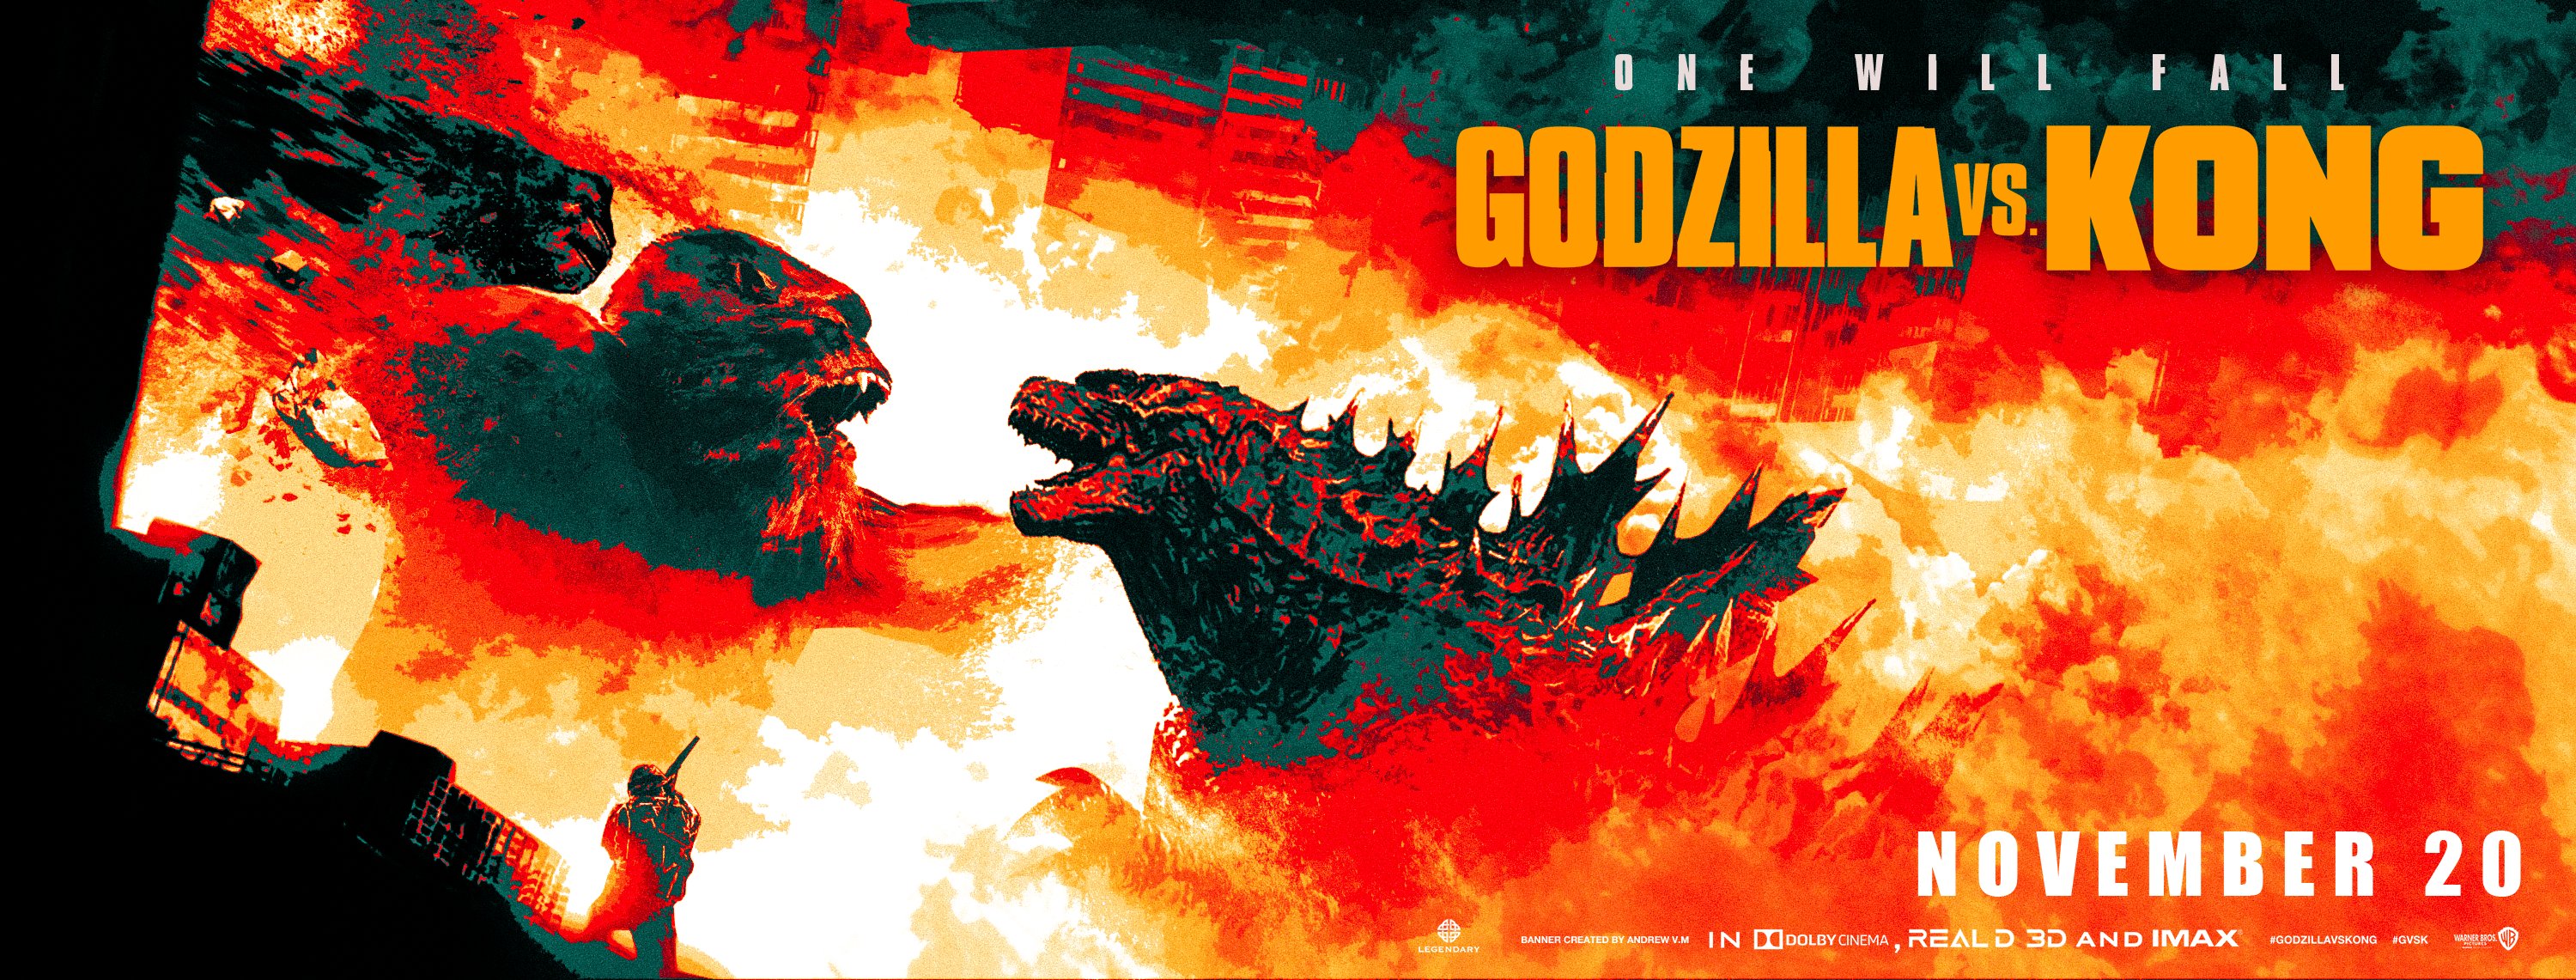 Godzilla Vs Kong 2020 Incredible Fan Art Banners Godzilla News Godzillavskong